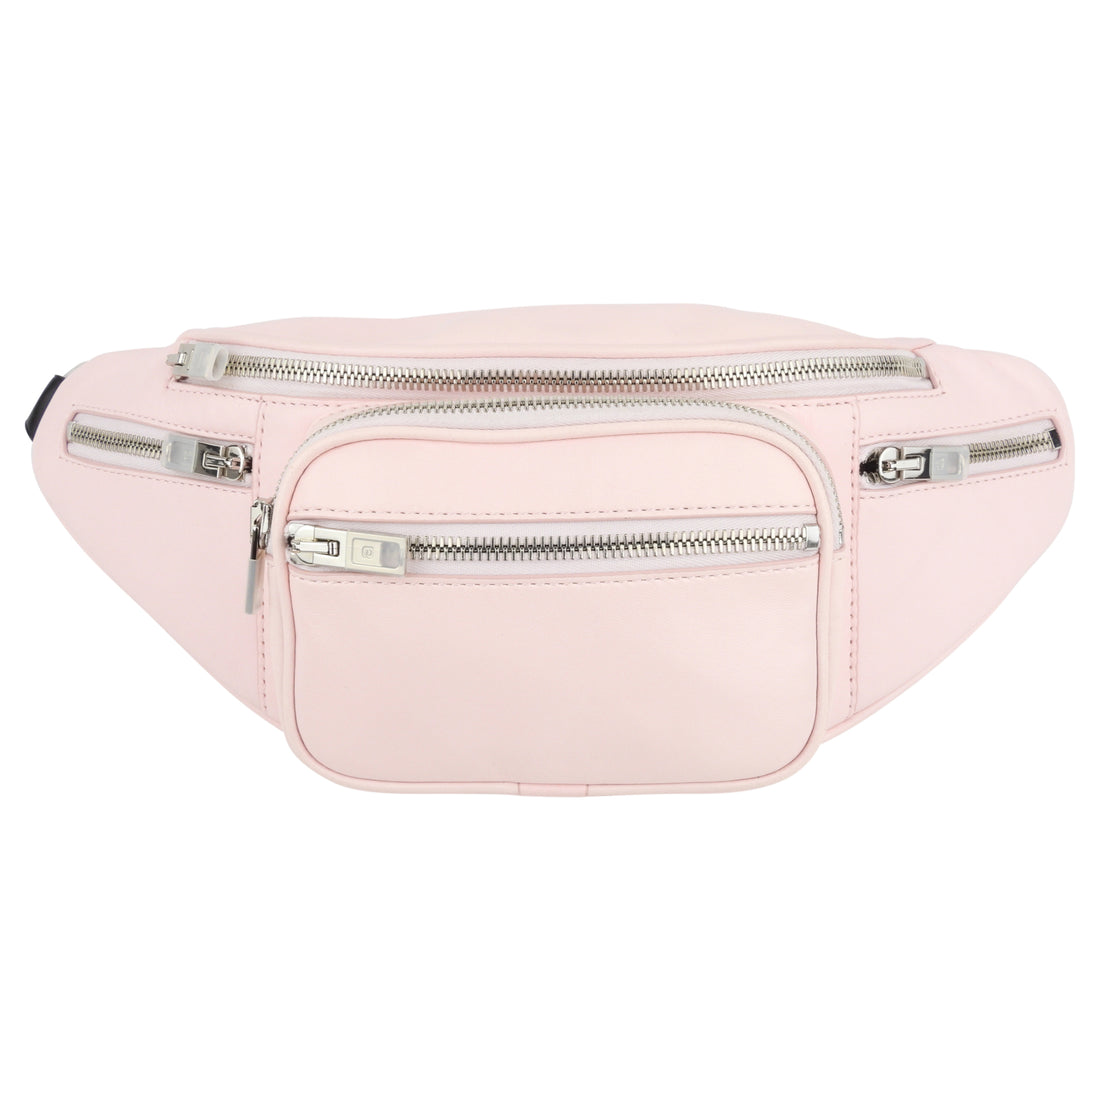 Alexander Wang Pink Leather Chain Zip Attica Fanny Pack Waist Bag